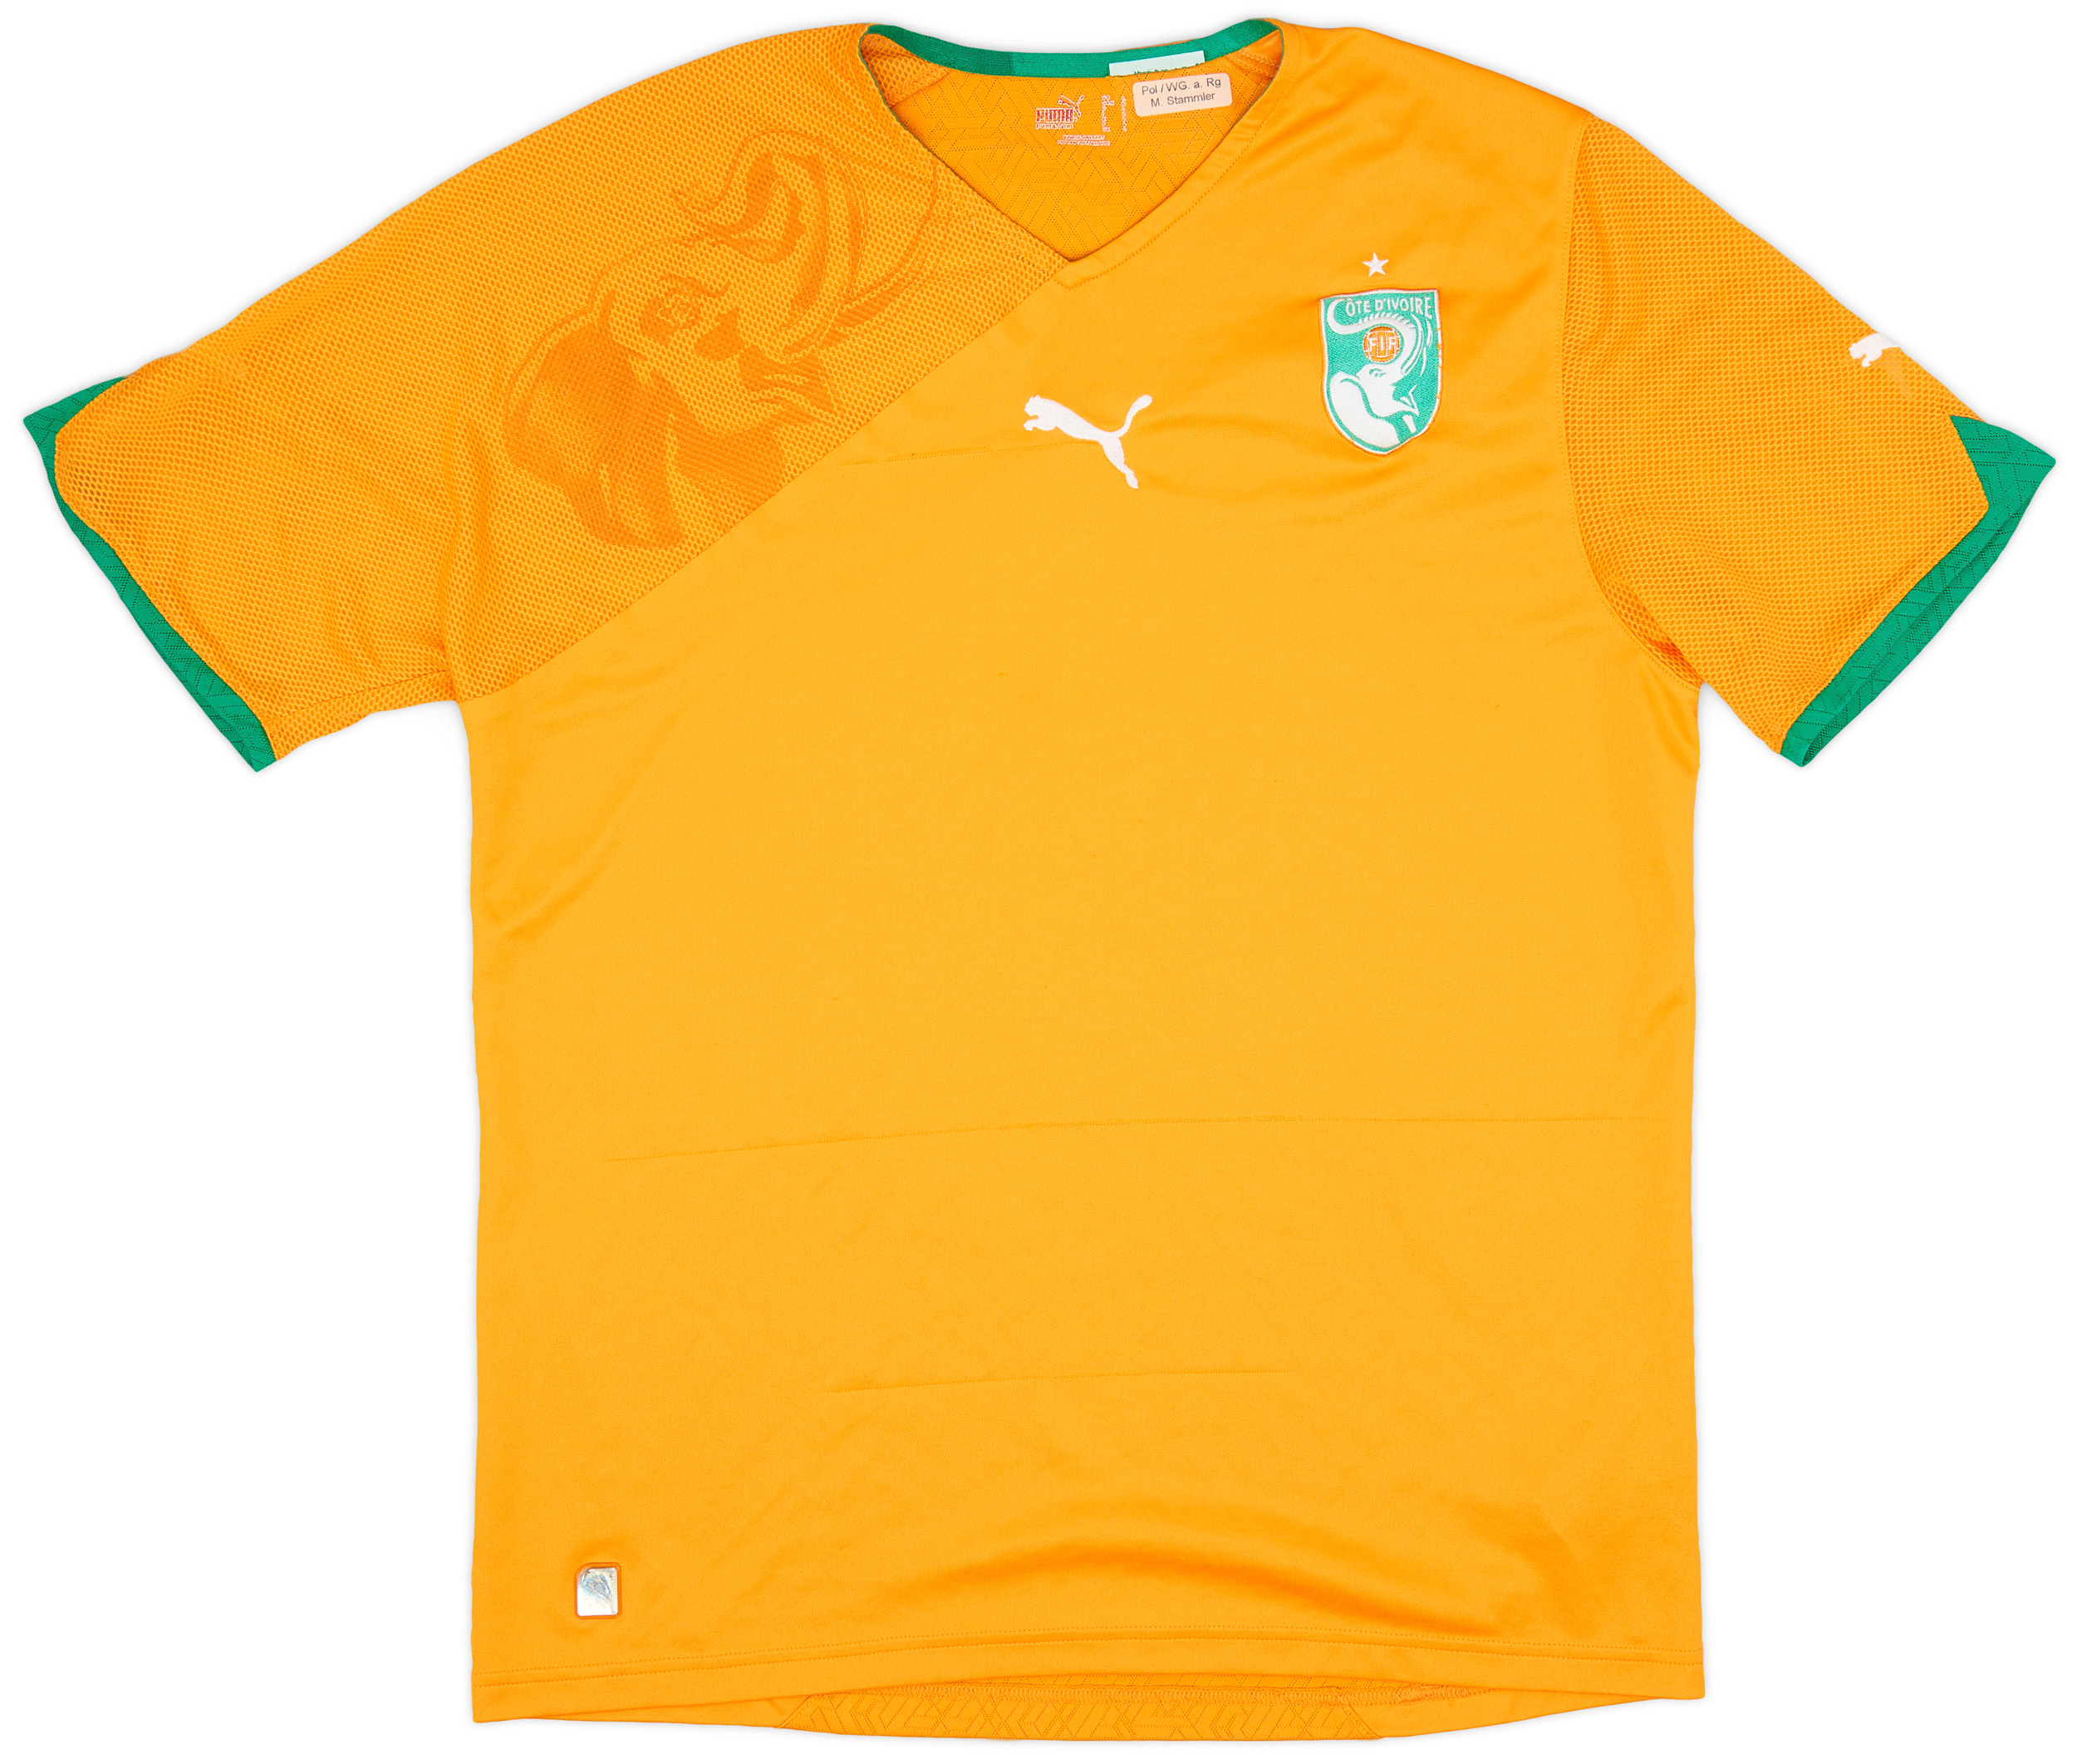 2010-11 Ivory Coast Home Shirt - 6/10 - ()